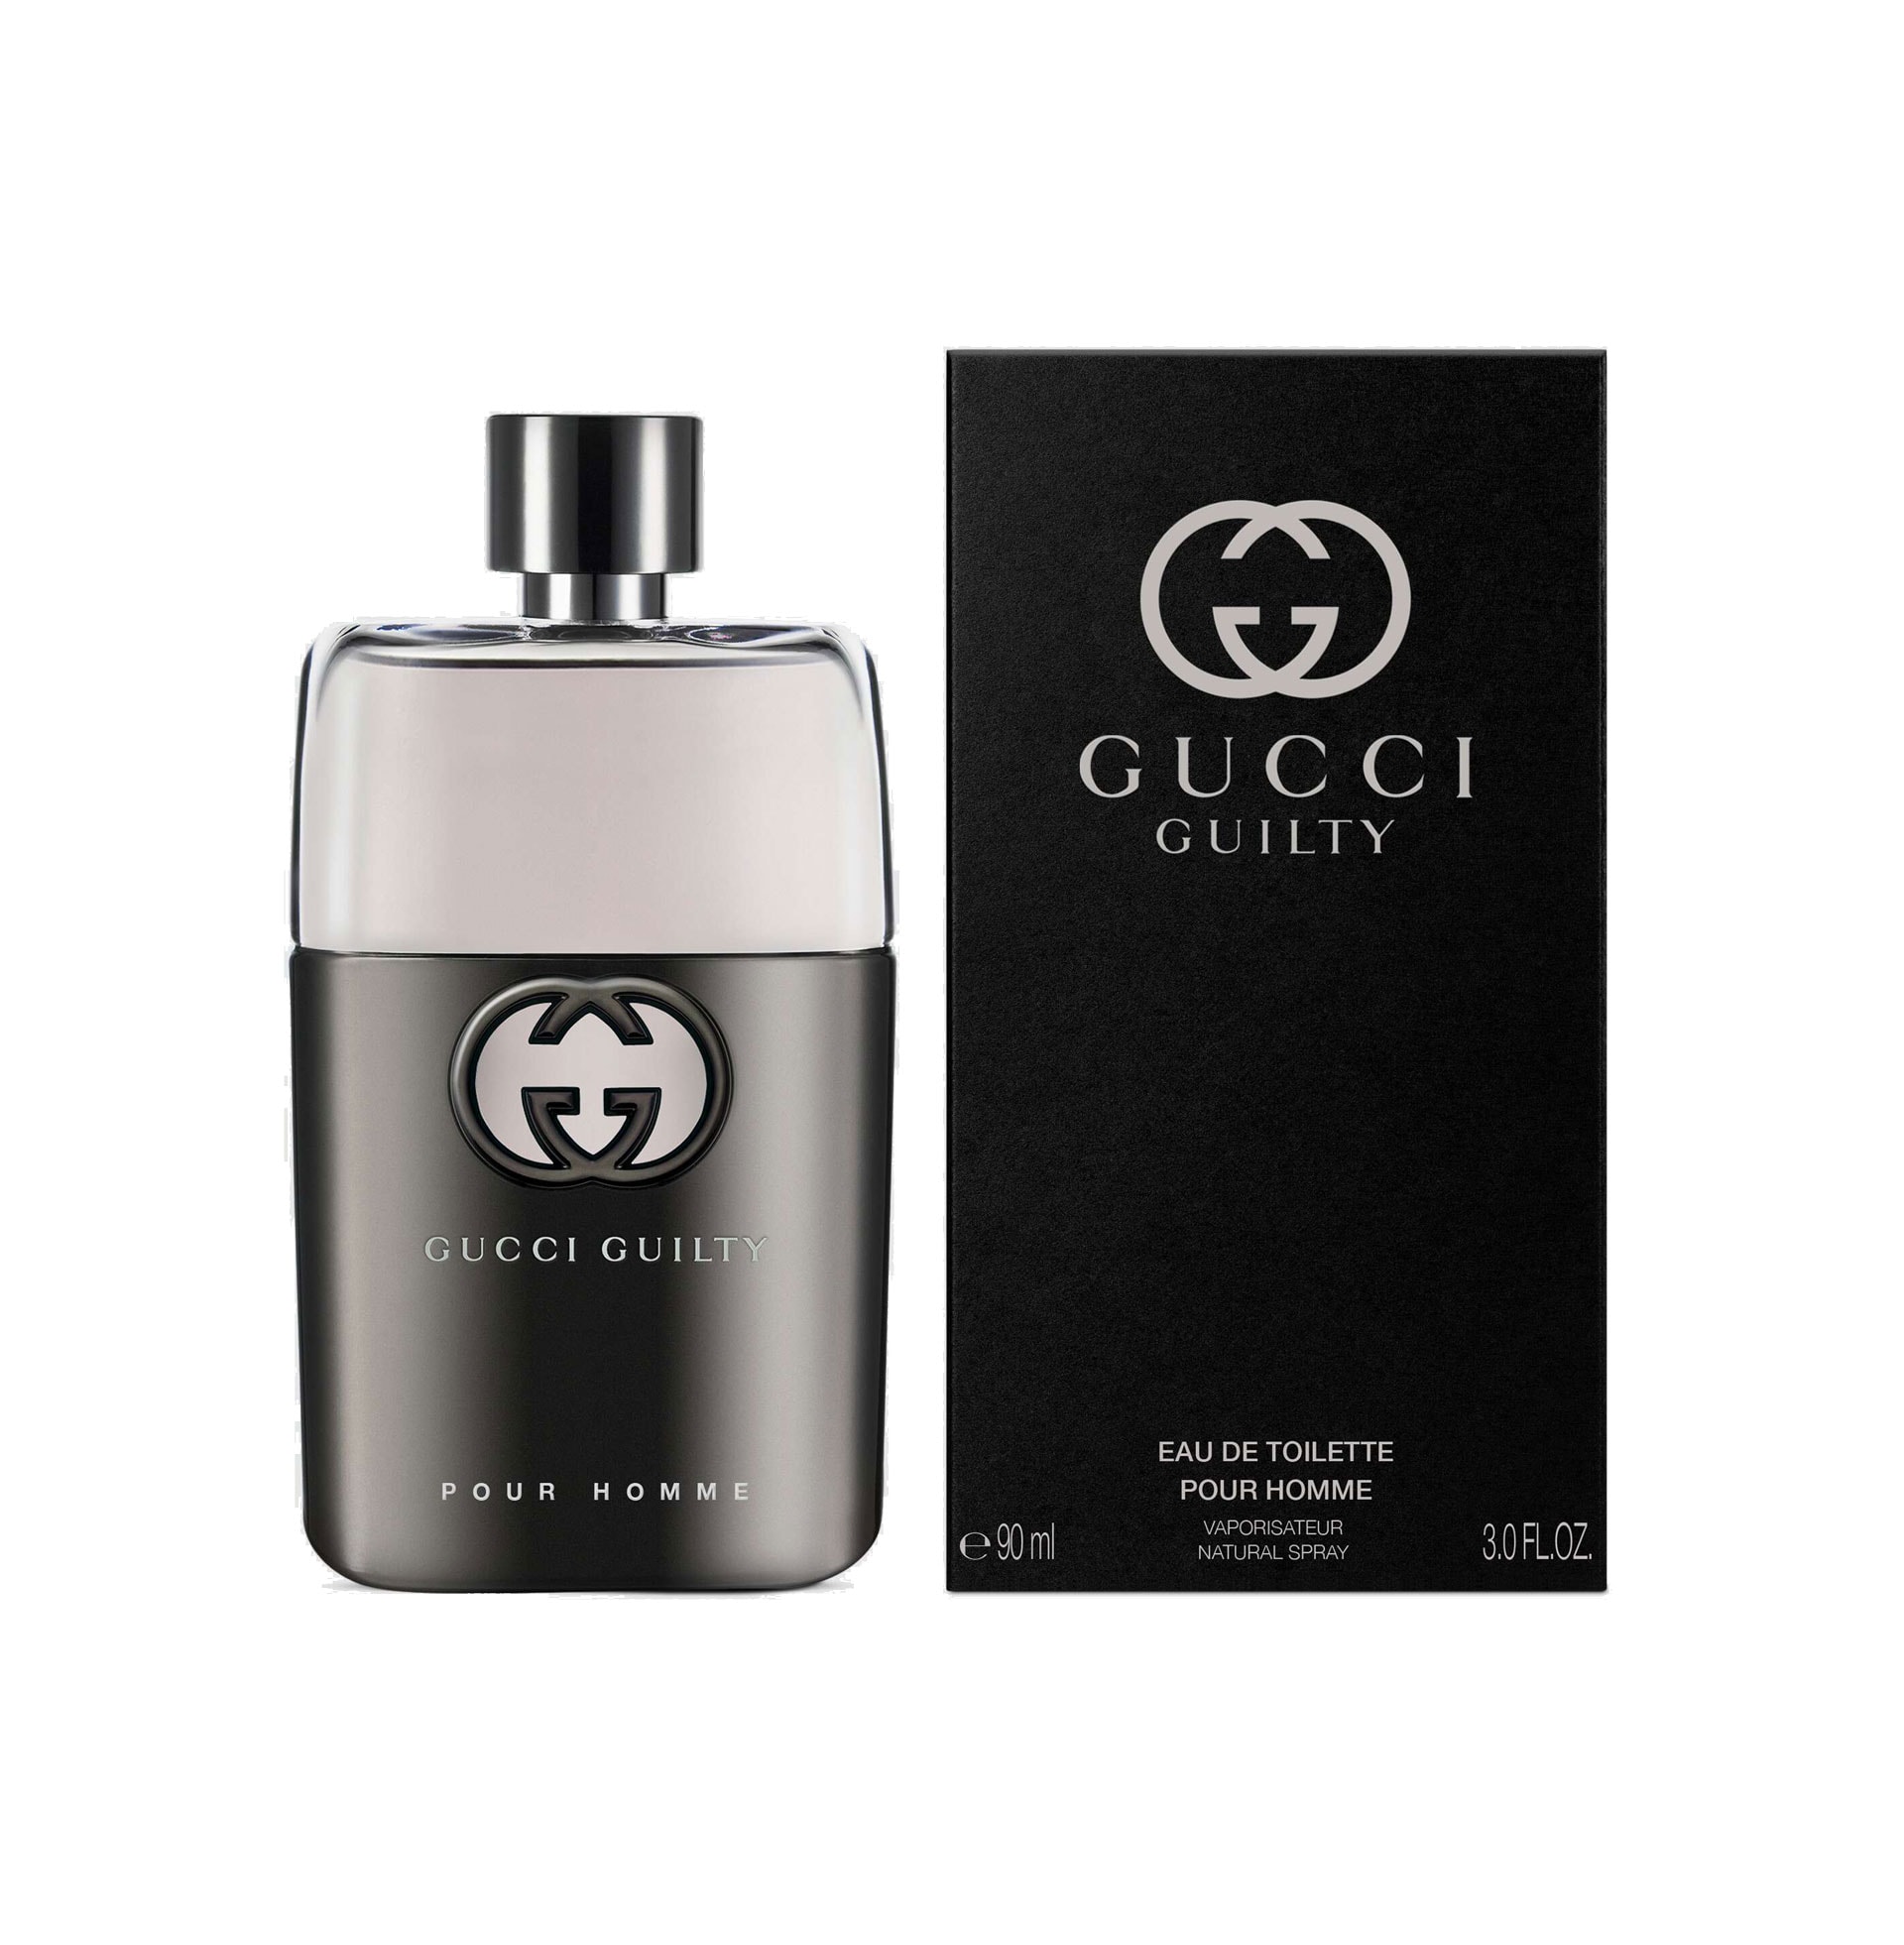 Gucci Guilty Pour Homme » Gucci » The Parfumerie » Sri Lanka